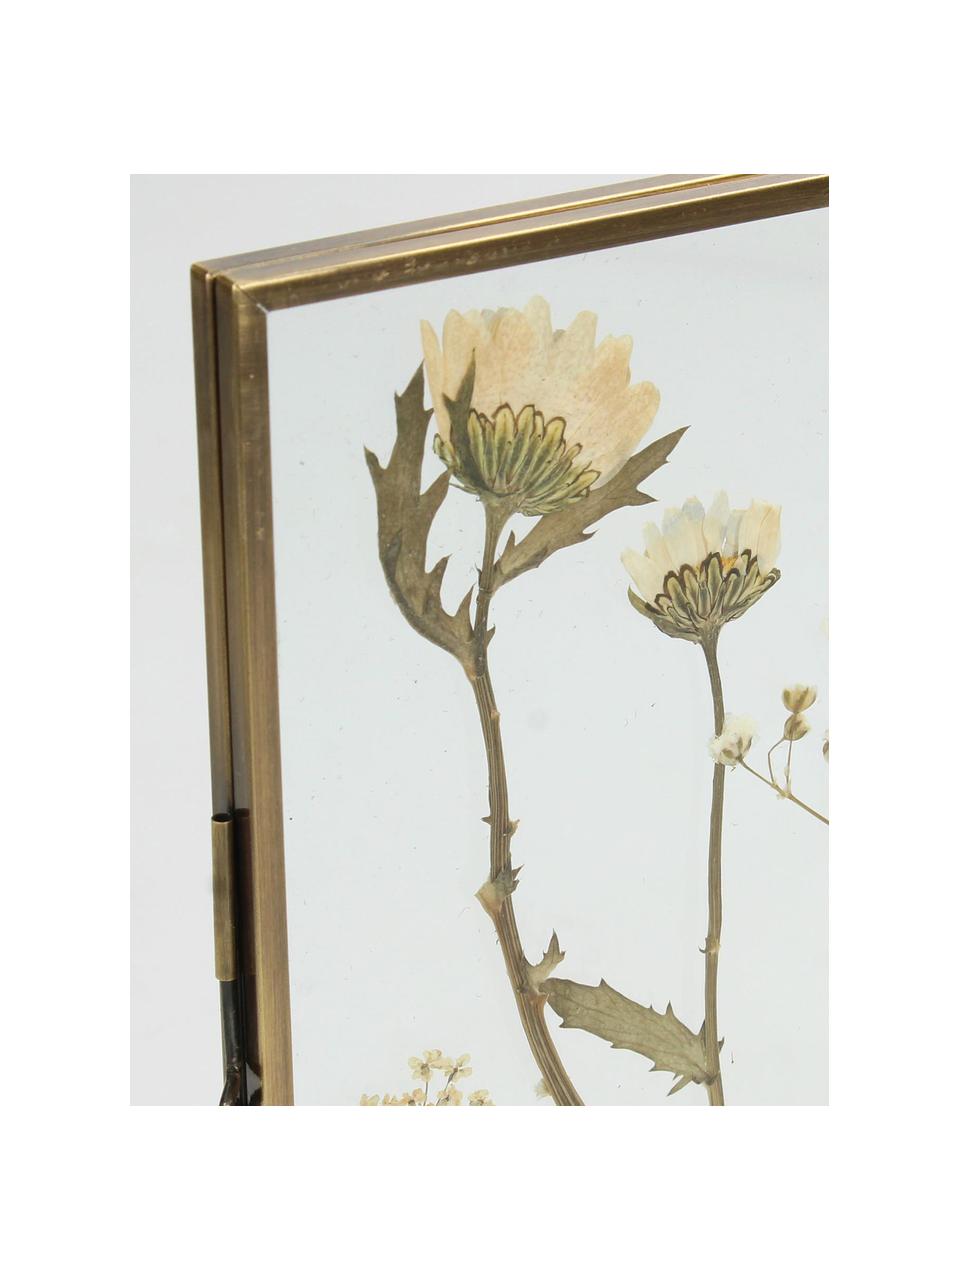 Ramka na zdjęcia Dried Flowers, Ścianki: transparentny Rama: odcienie miedzi, S 10 x W 15 cm